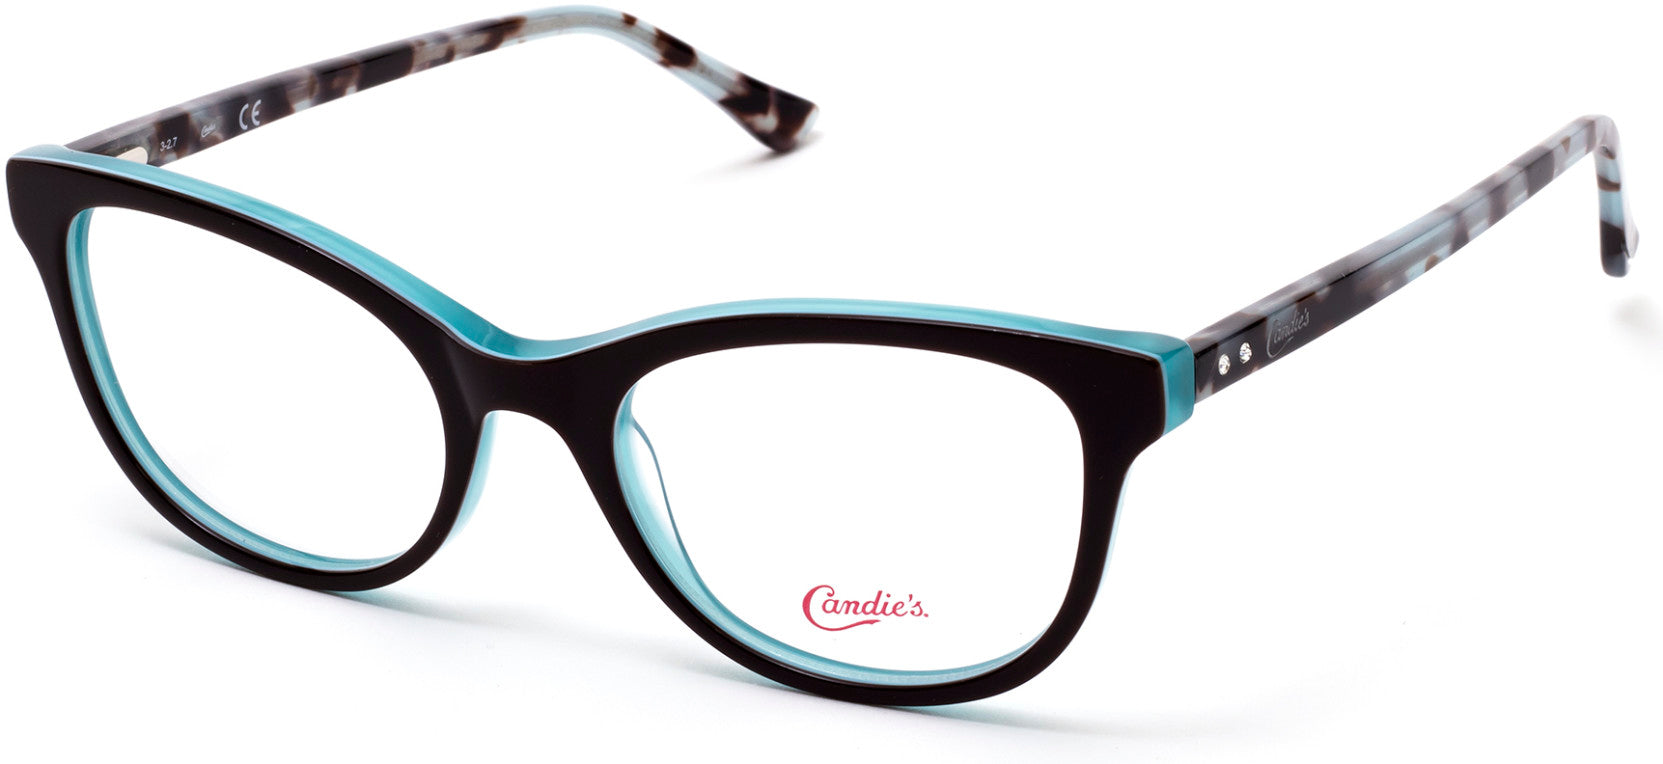 Candies CA0162 Round Eyeglasses 050-050 - Dark Brown